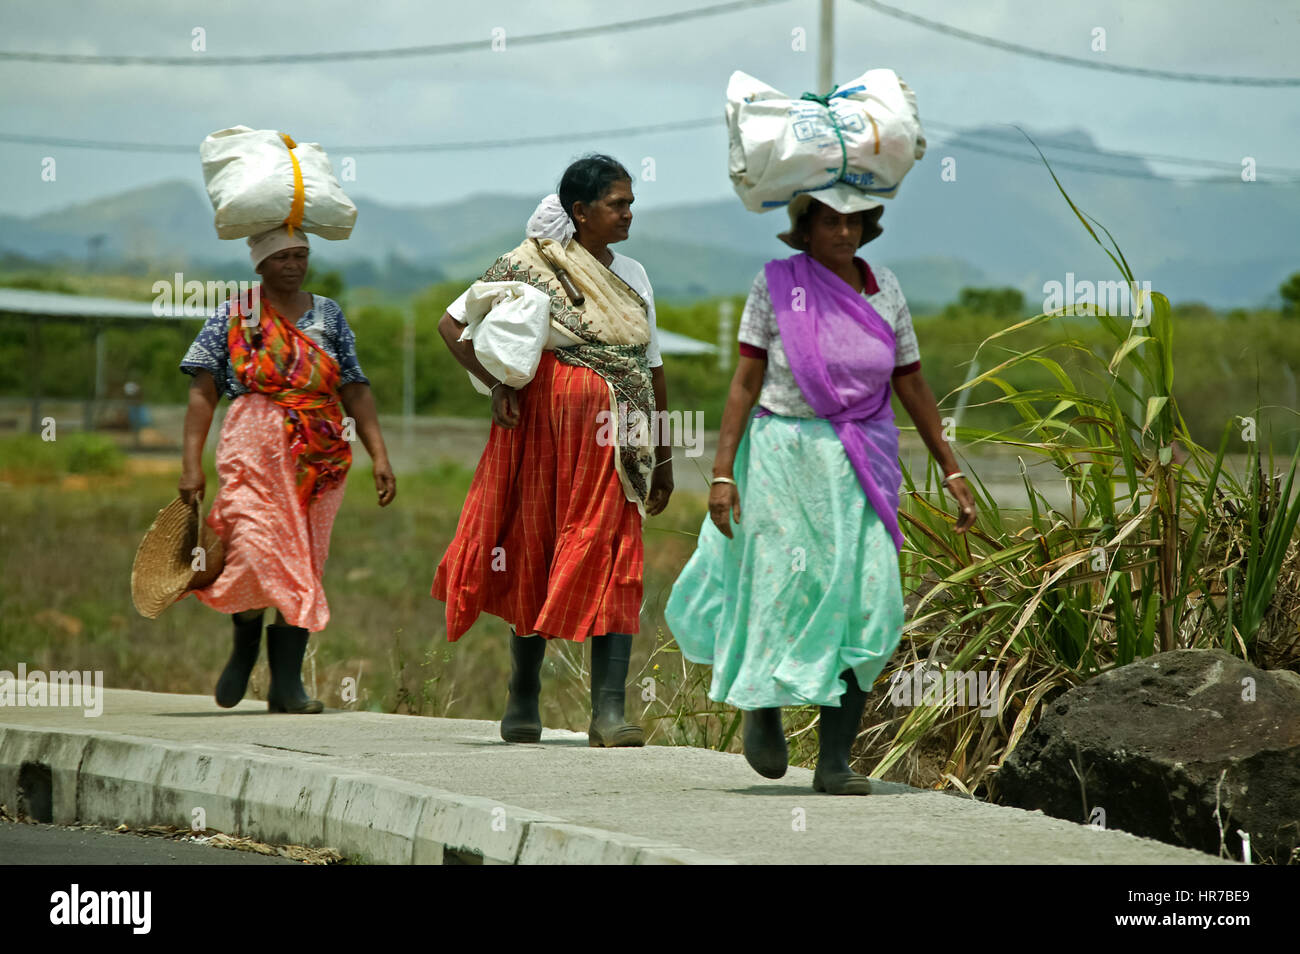 Las mujeres llevan cargas sobre sus cabezas, Mauricio, plantación de té, fábrica de té Bois Chéri, plantación de té, las plantaciones de té, Bois cheri Tea Factory, selector de té Foto de stock